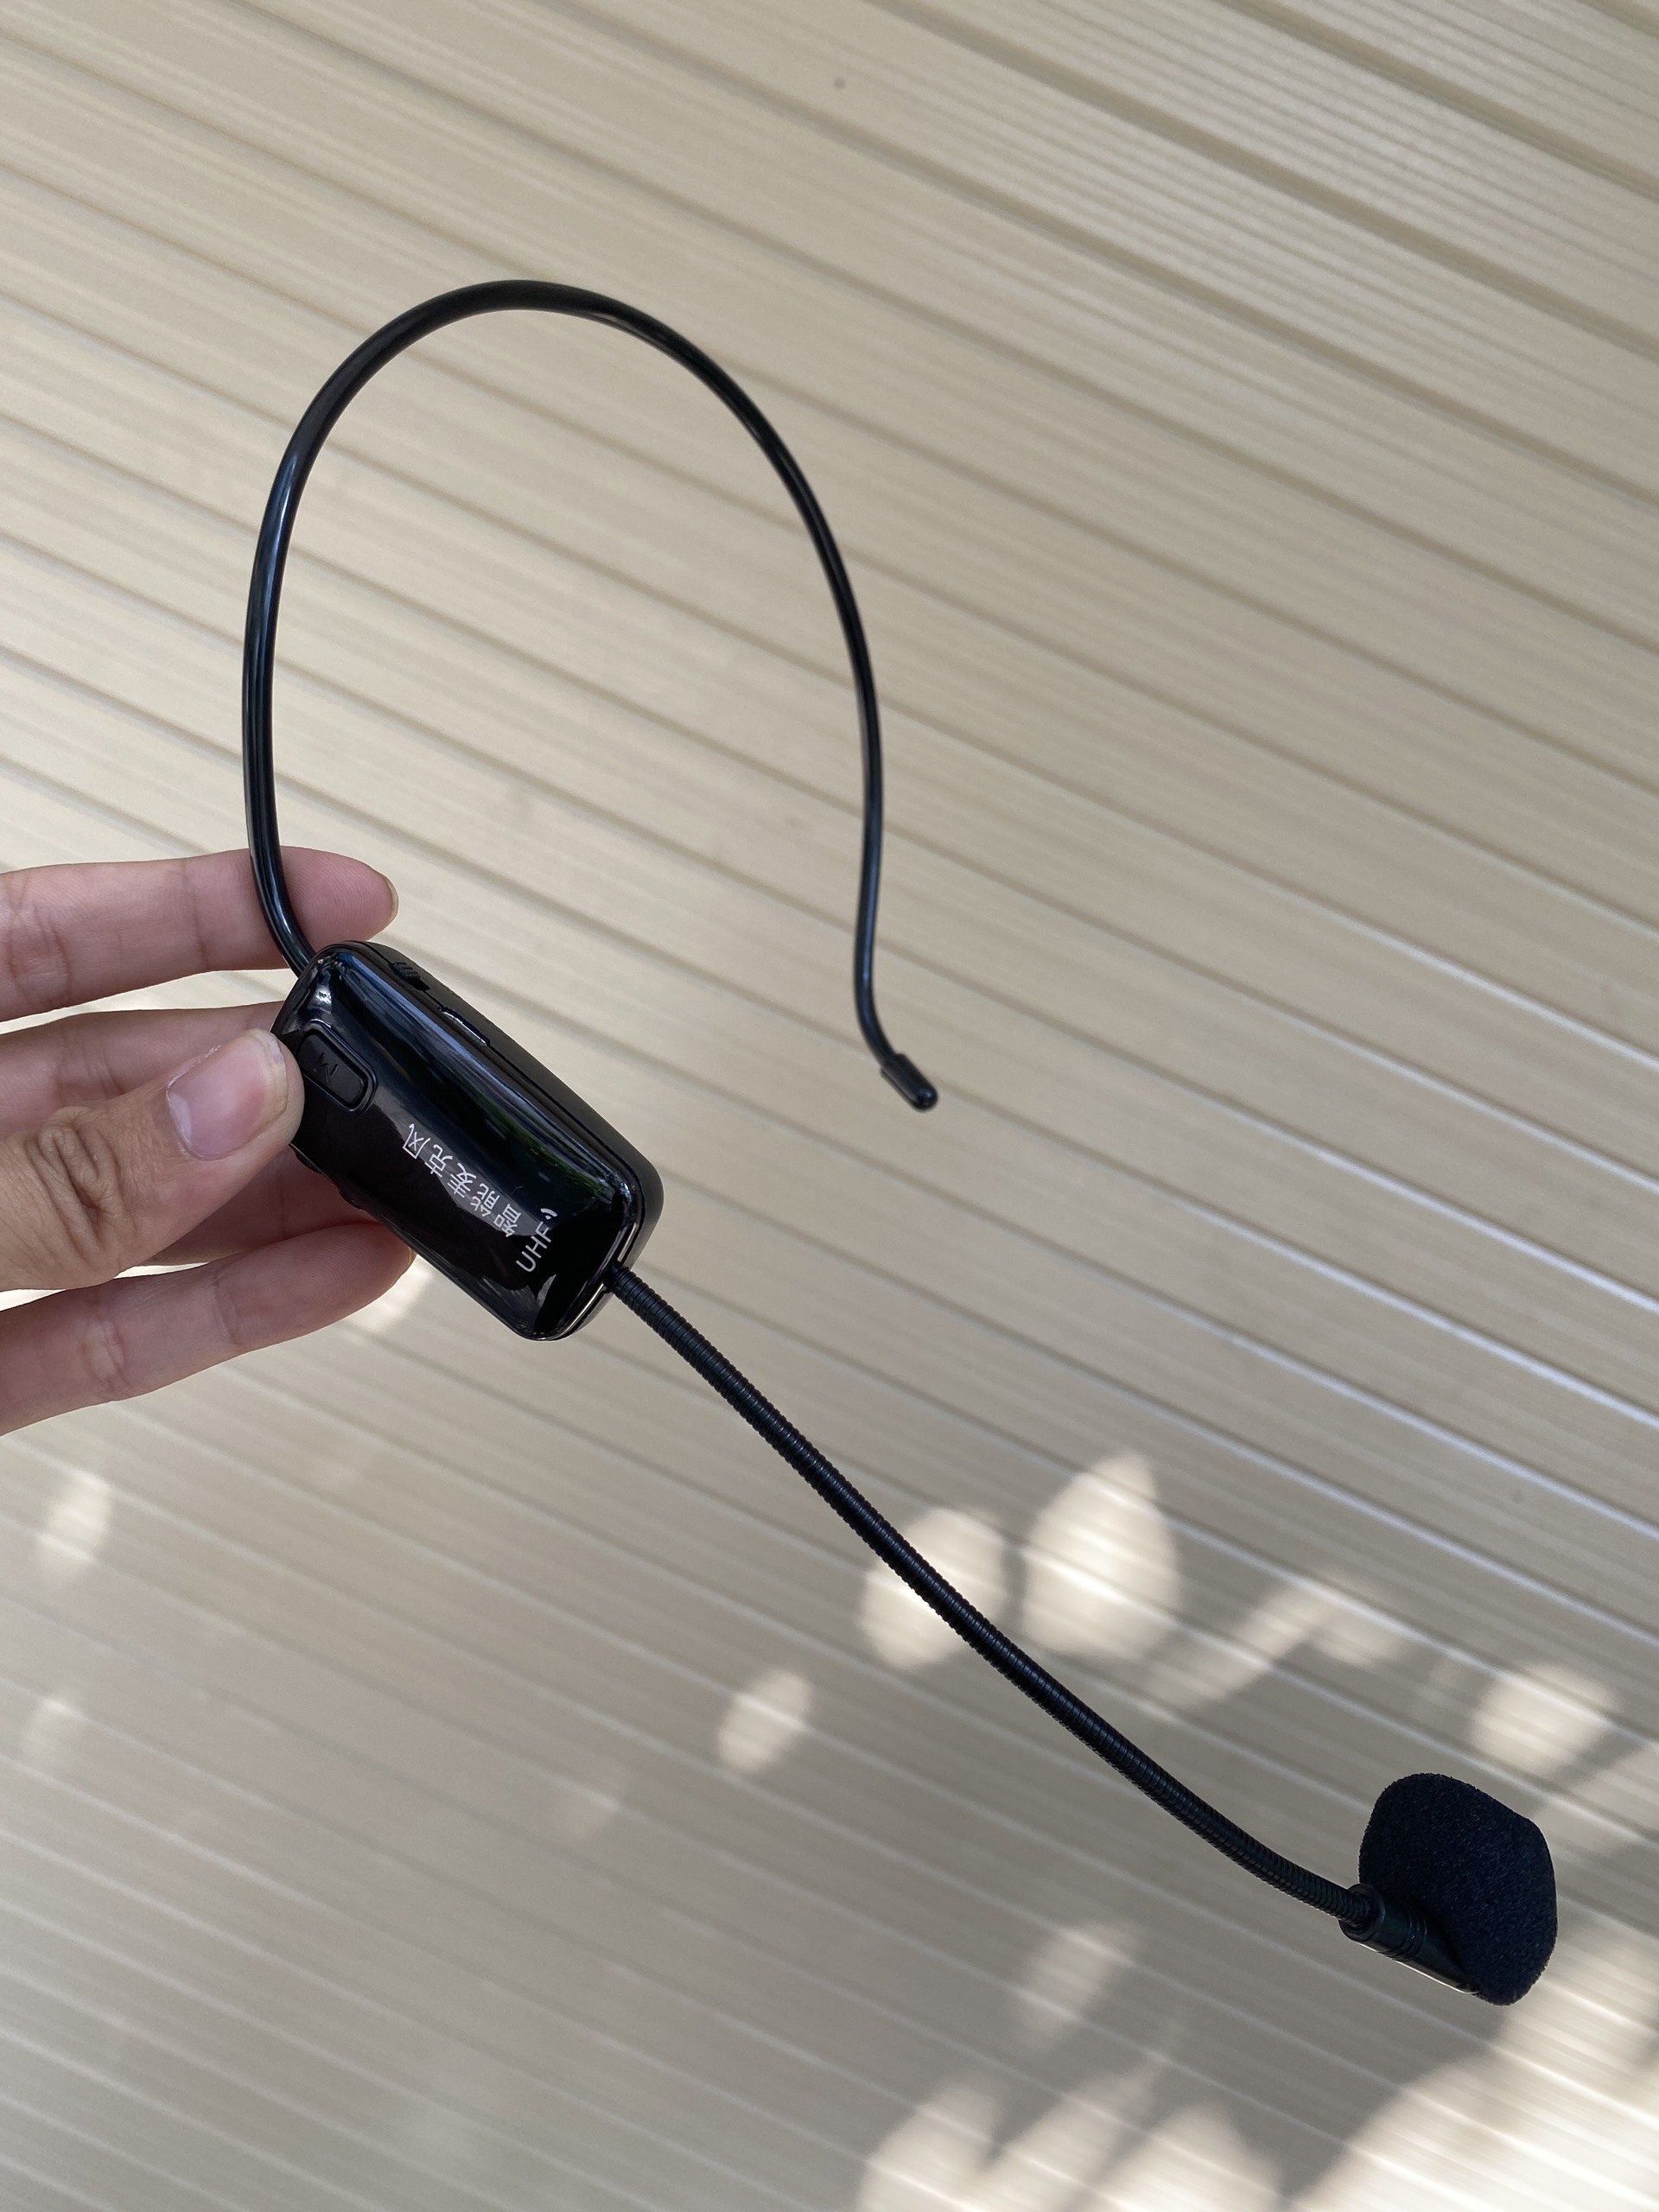 Loa trợ giảng Shuae SM918 - Máy trợ giảng kèm micro cài tai không dây - Kết nối Bluetooth, AUX, USB, SD card, FM - Công suất 15W - Có echo hát karaoke dễ dàng - Pin sạc dung lượng lớn cho thời gian sử dụng lên đến 6h - Hàng nhập khẩu 5